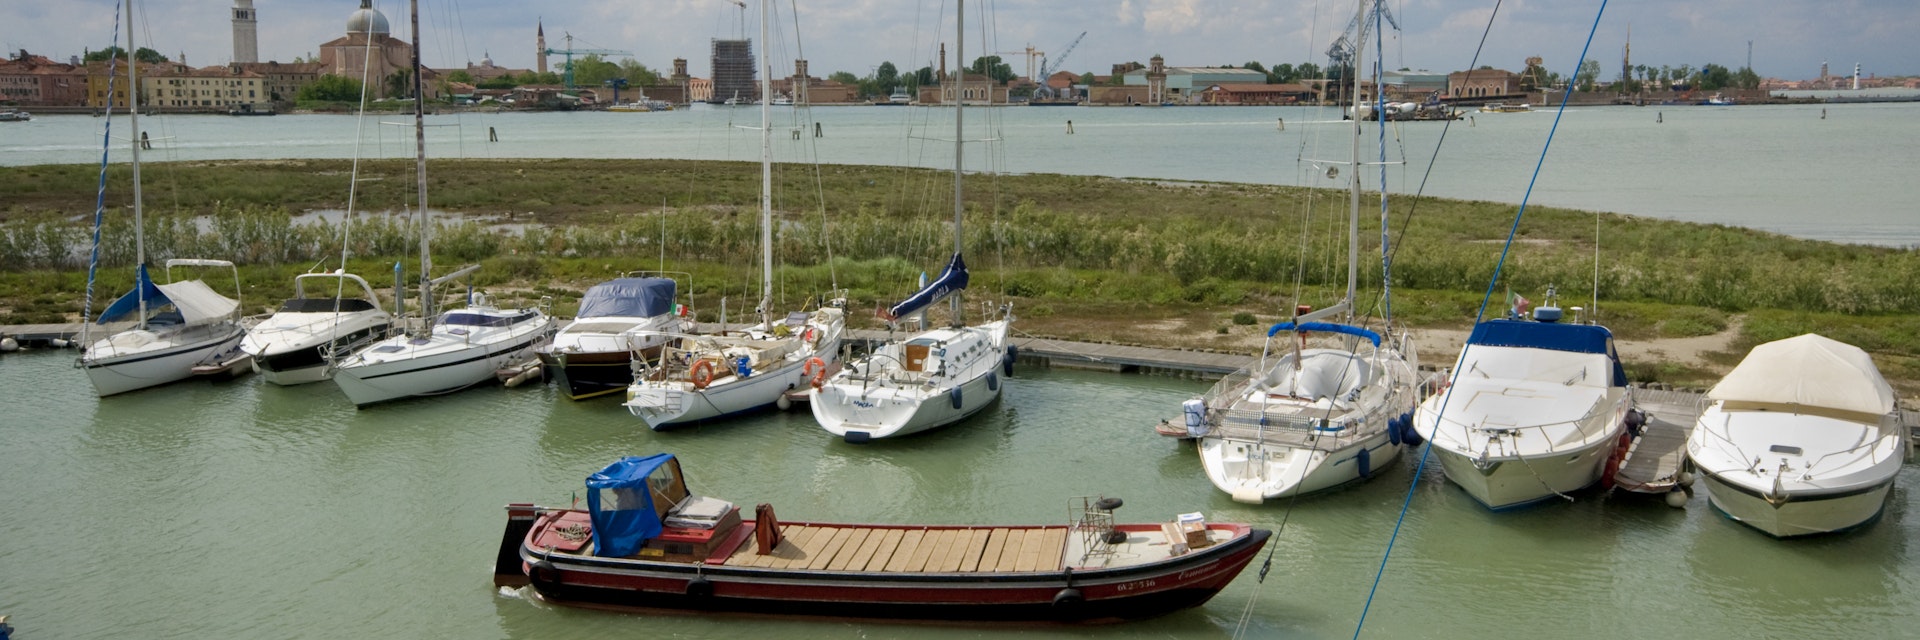 Italy, Venice, Certosa island, moored boats